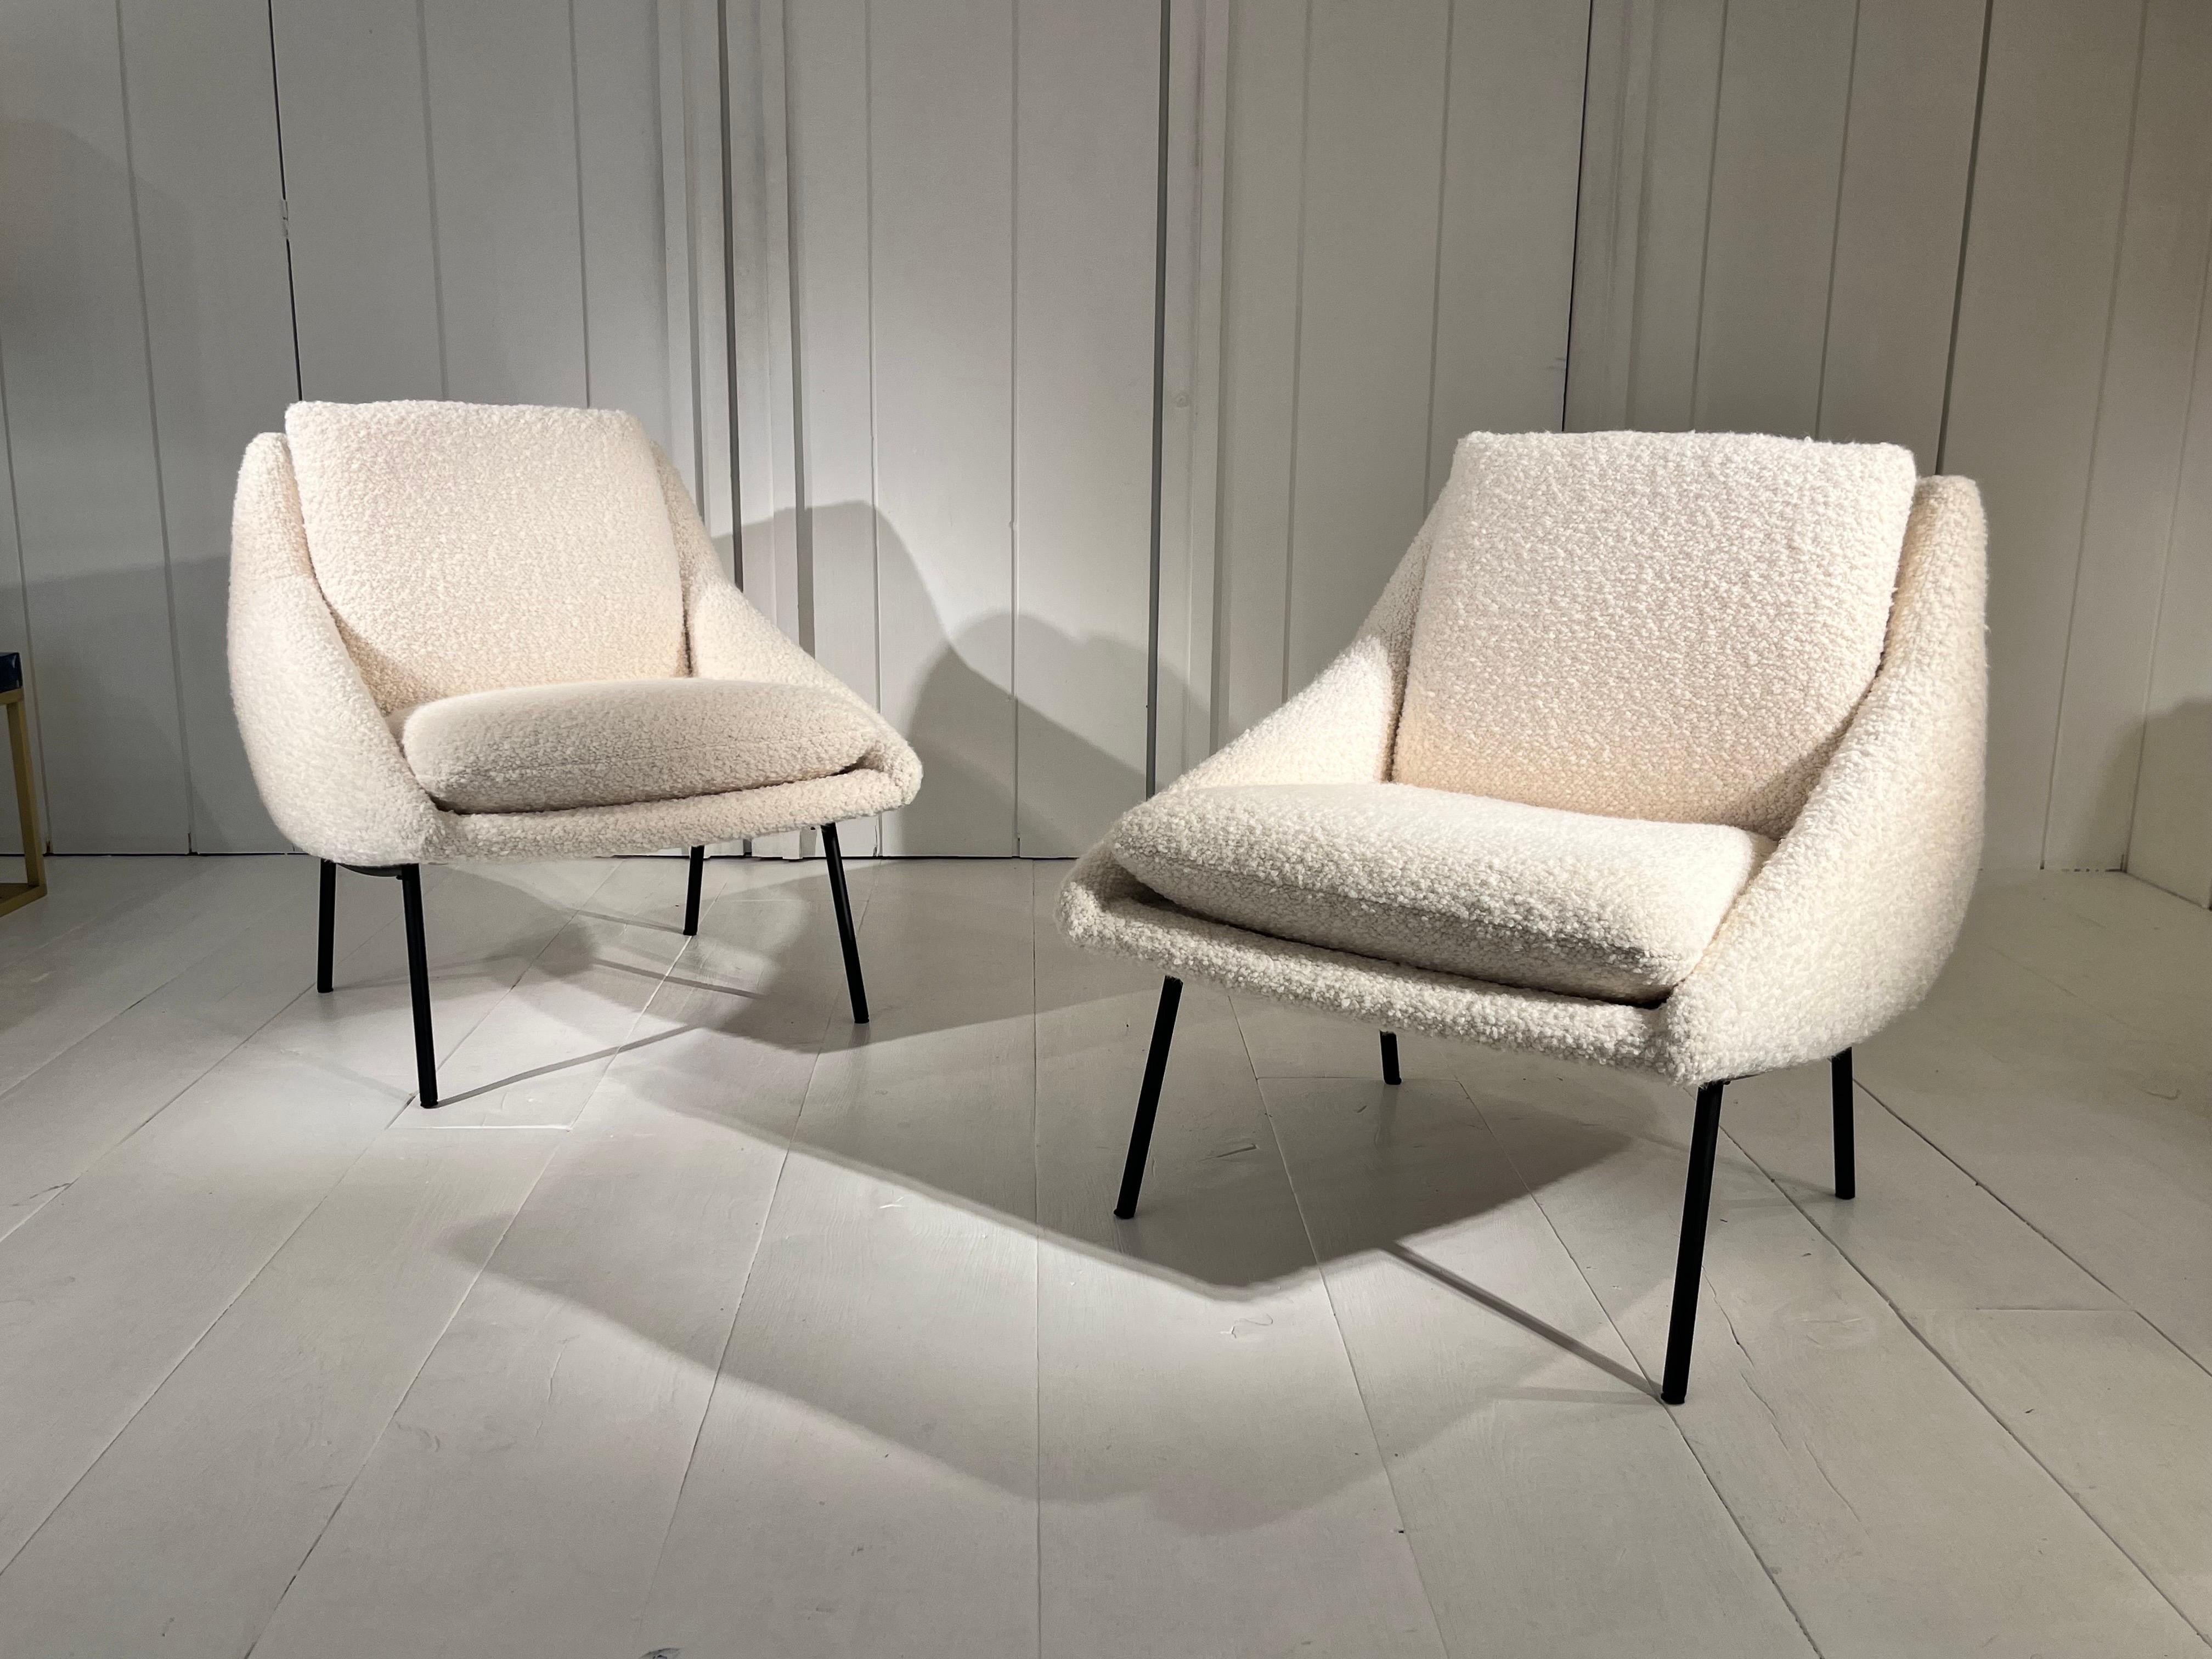 Paar Sessel des französischen Designers Joseph Andre Motte
Edition Steiner fron 1950s
Schwarze Eisenfüße und neu bezogen mit Designer Guild Stoff
Sehr komfortabler Sitz
Perfekter Zustand